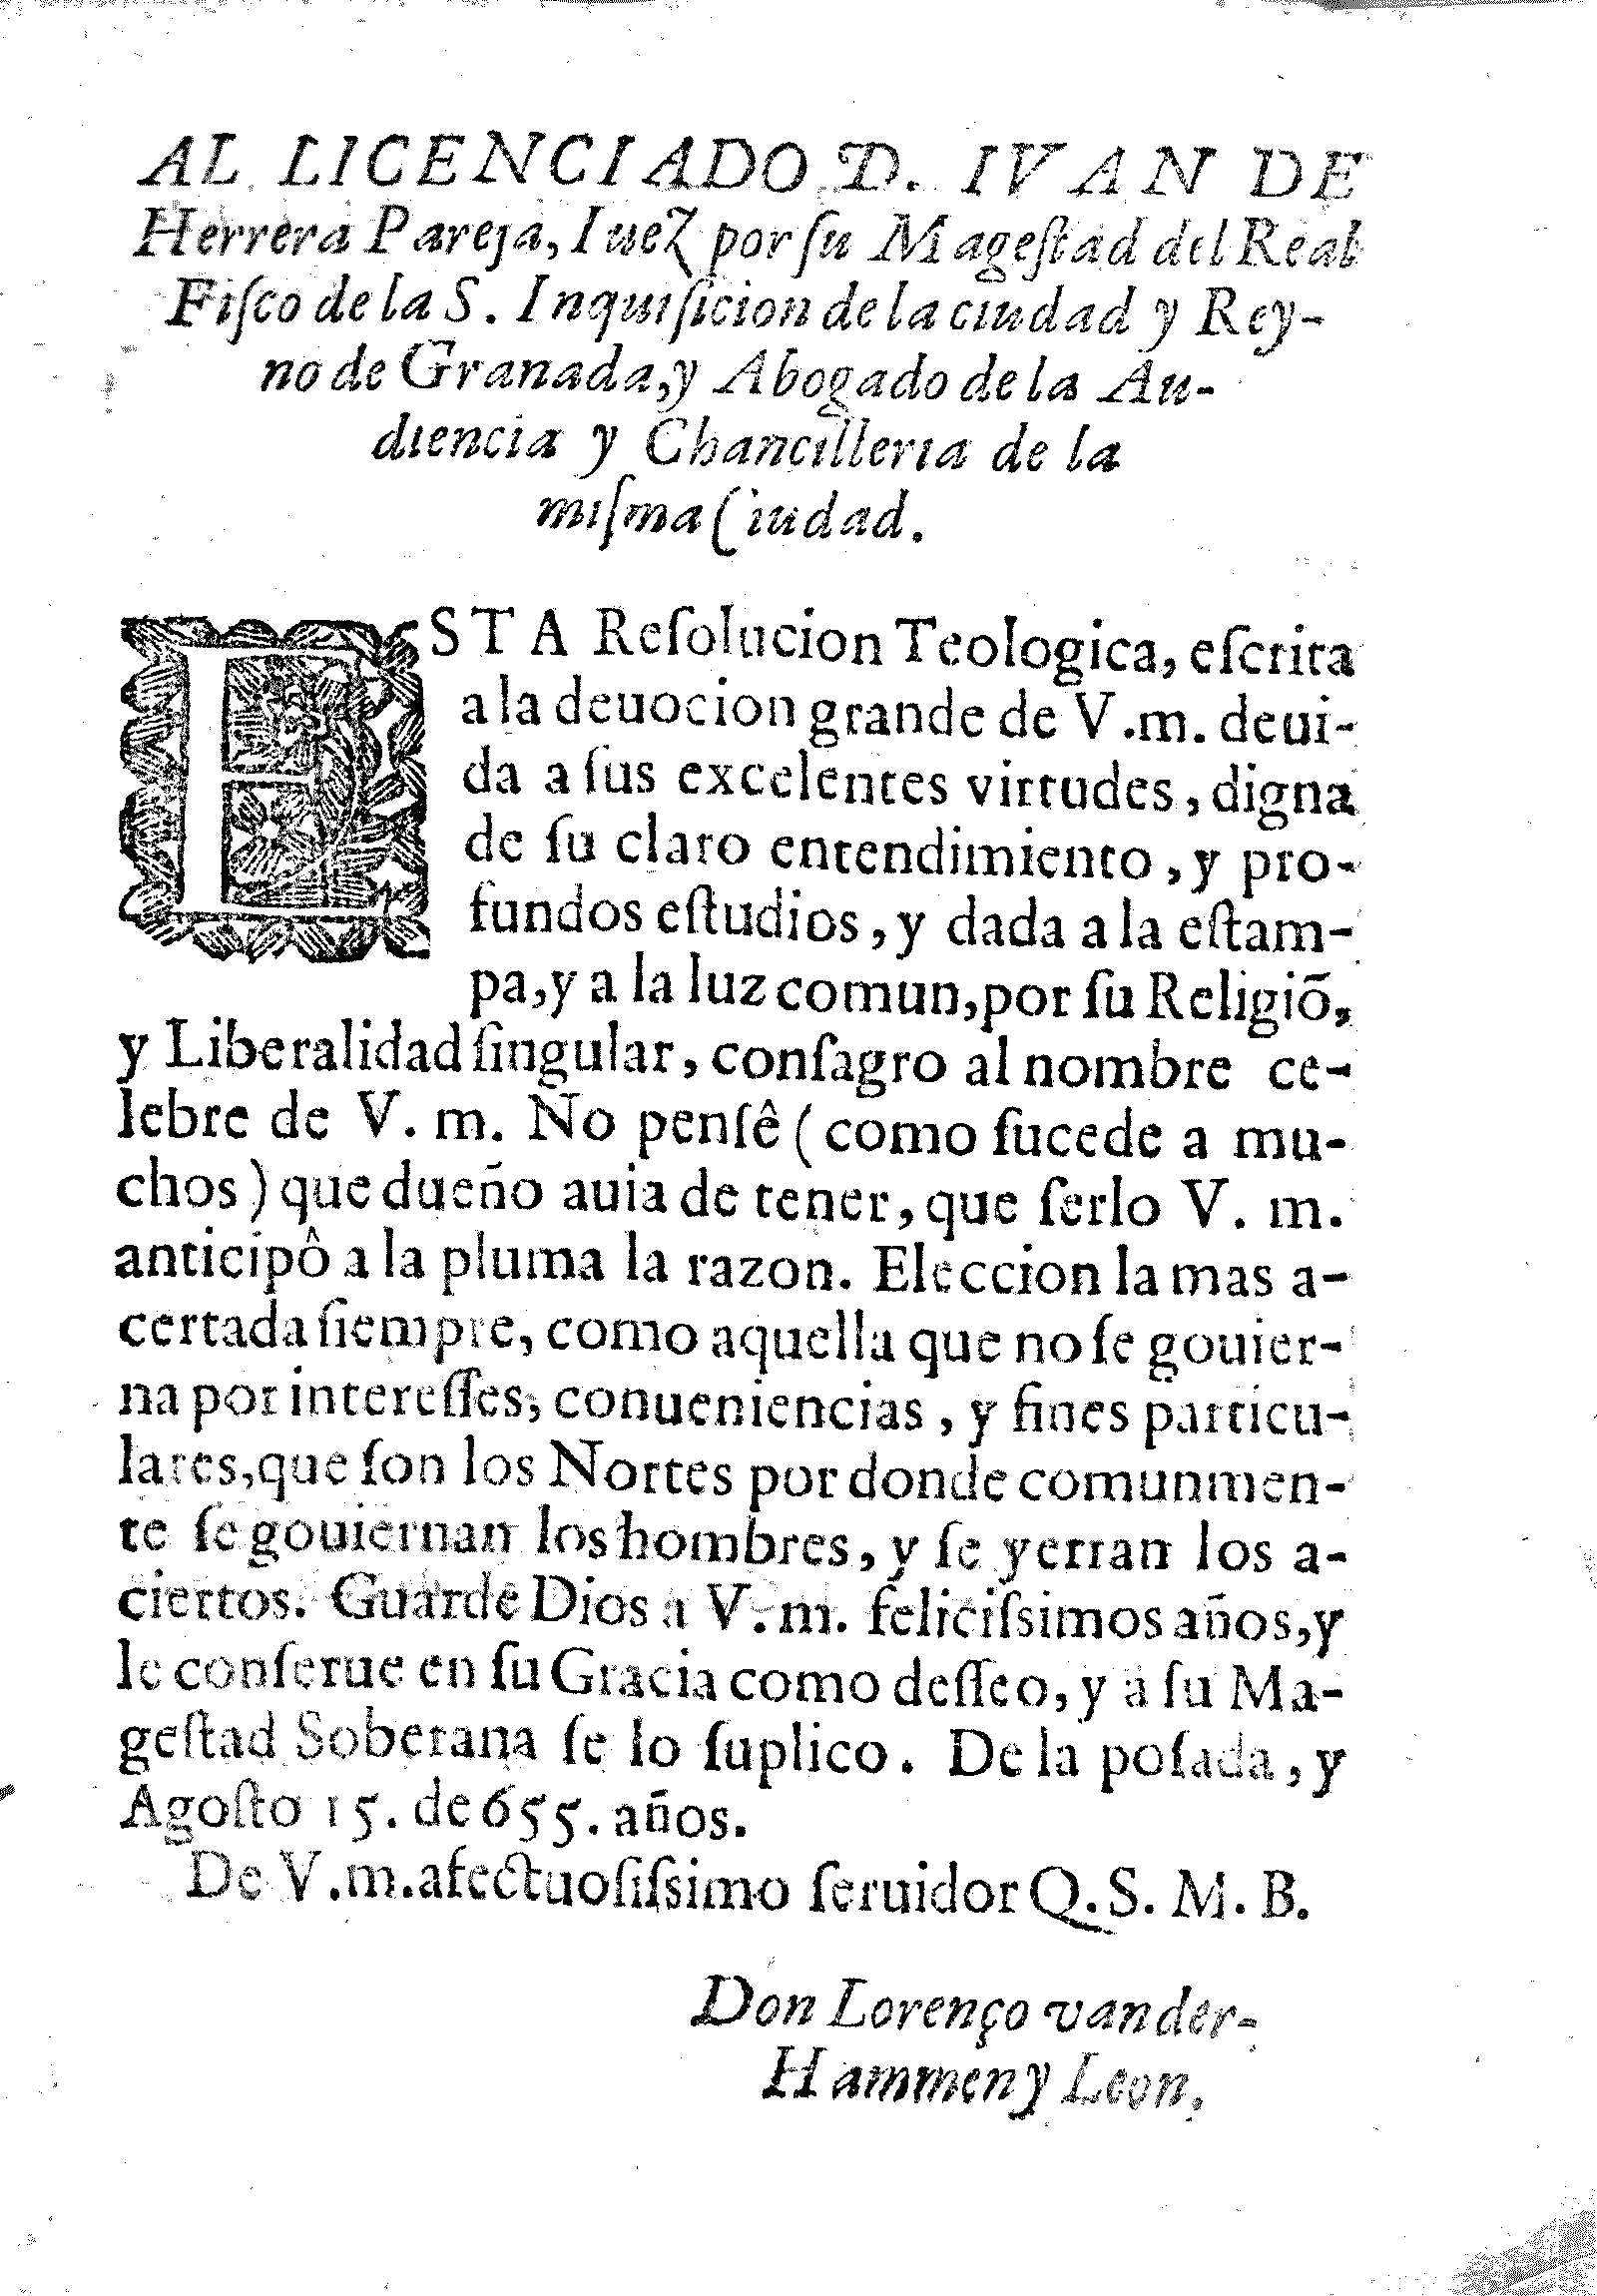 Al licenciado D. Ivan de Herrera Pareja, Iuez por su Magestad del Real Fisco de la S. Inquisicion de la ciudad y Reyno de Granada, y Abogado de la Audencia y Chancilleria de la misma Ciudad